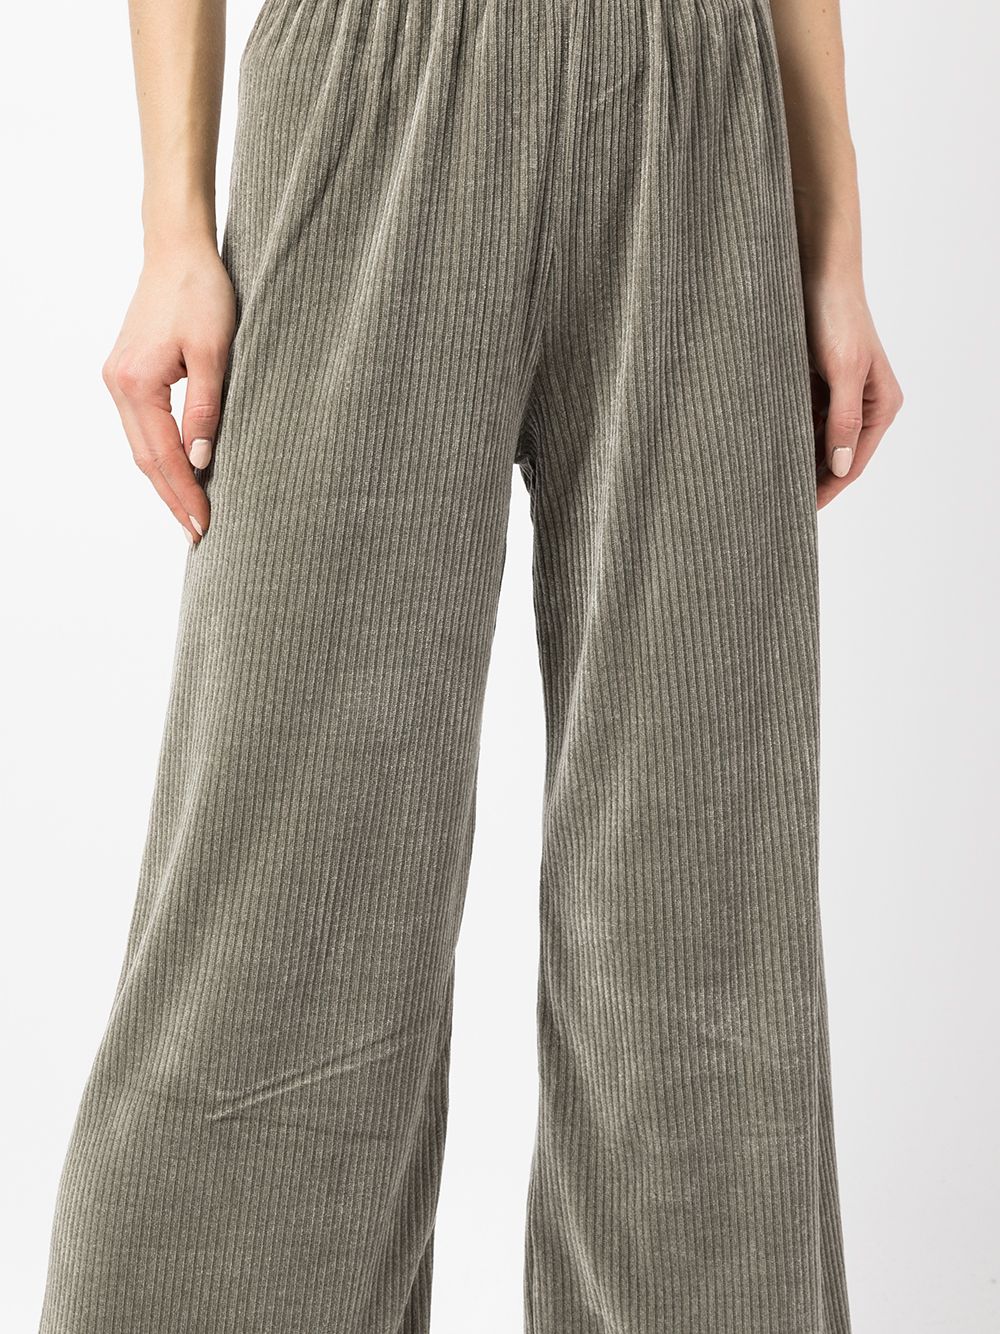 фото B+ab брюки с эластичным поясом